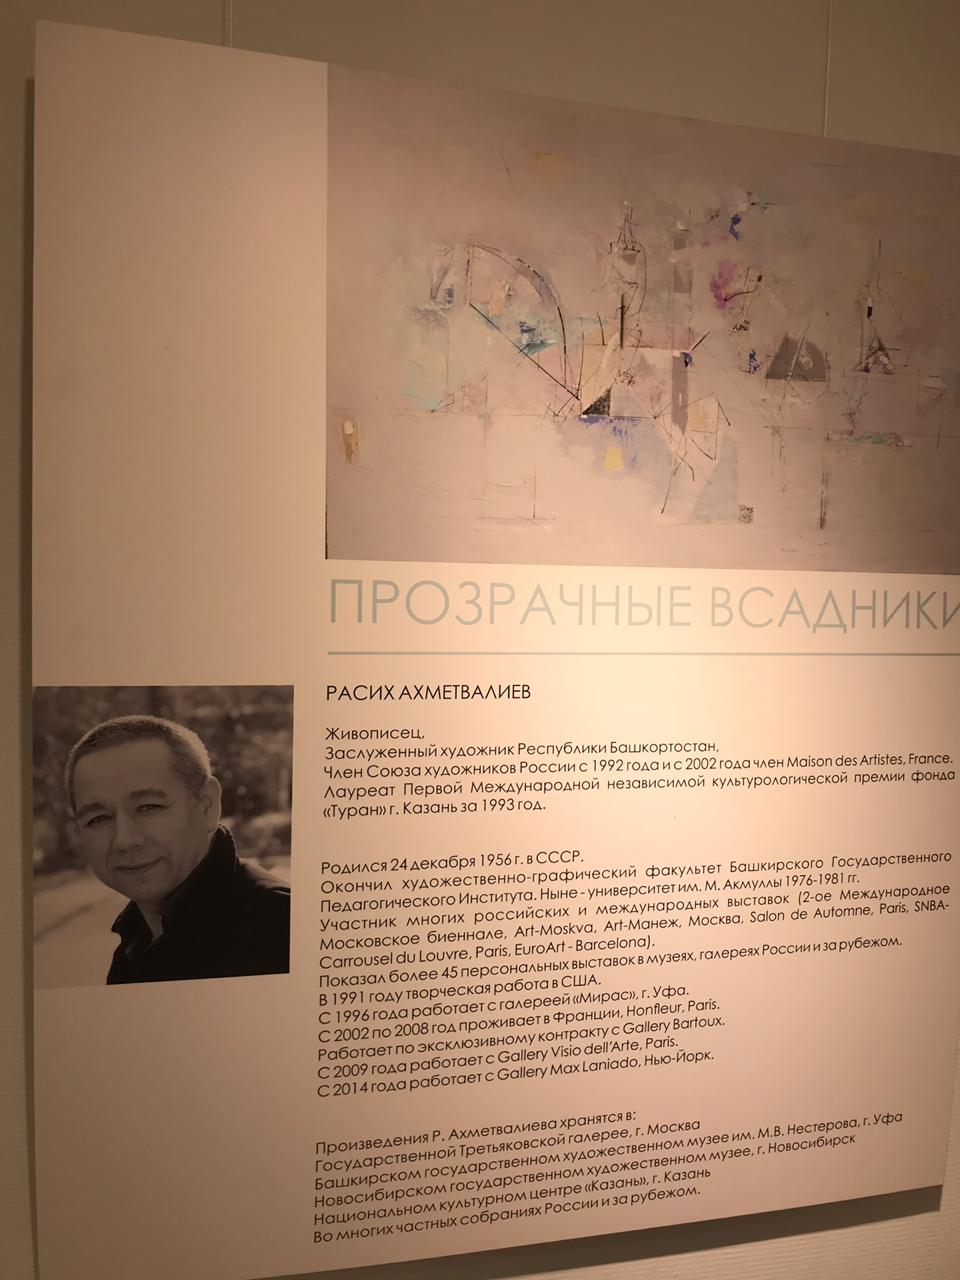 «Прозрачные всадники»: персональная выставка художника Расиха Ахметвалиева